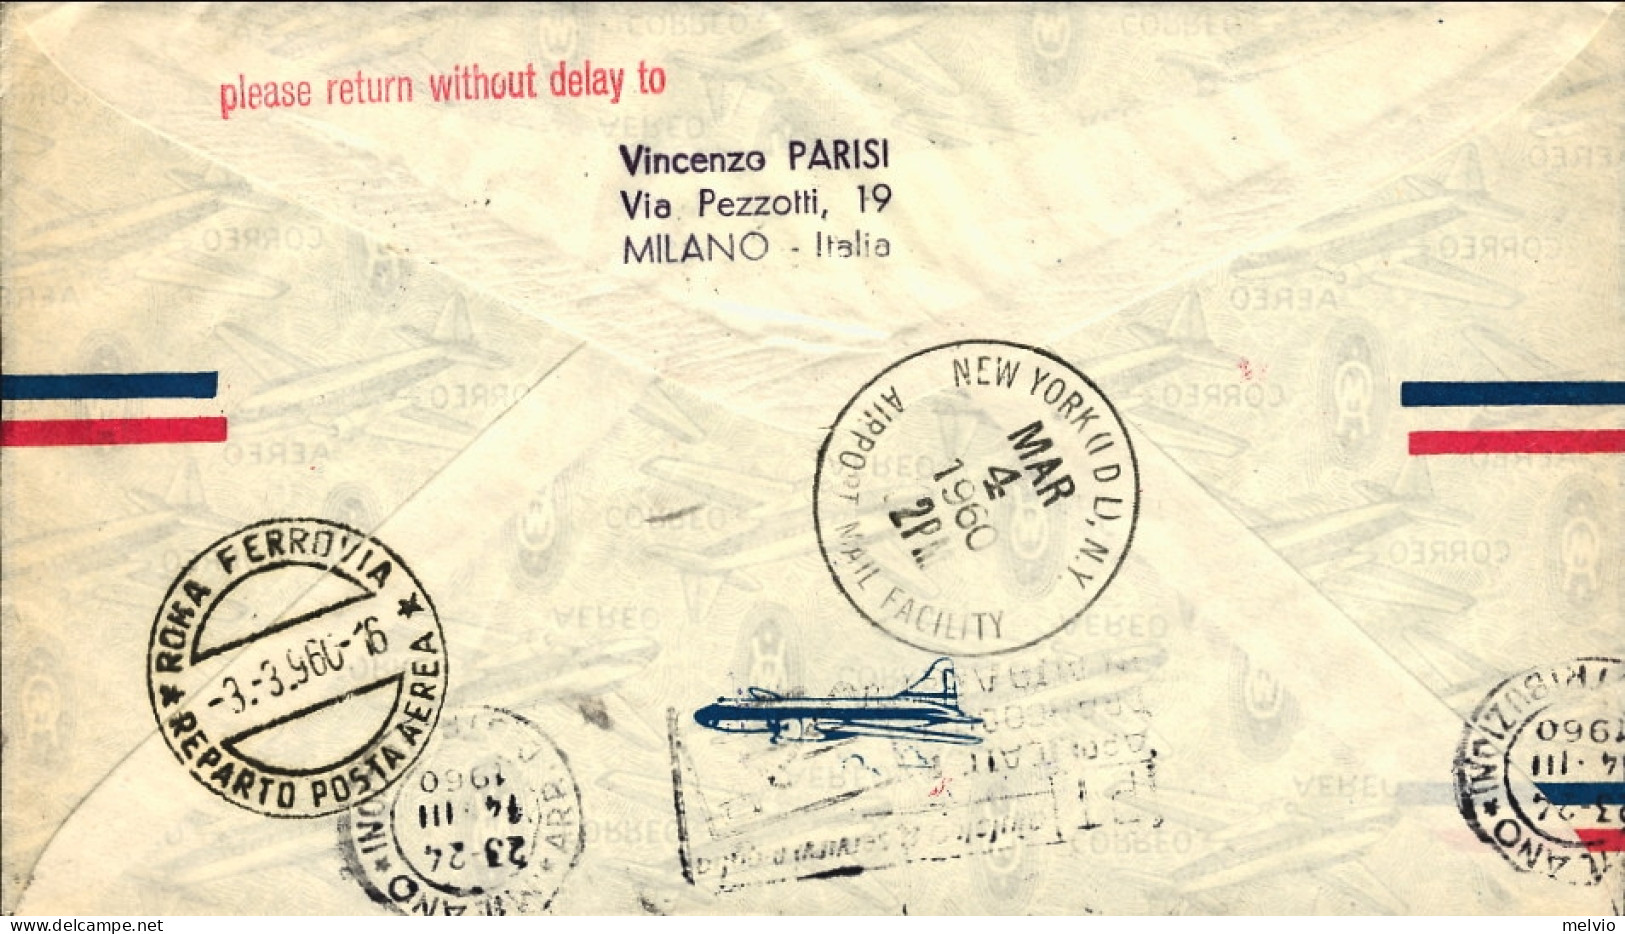 Vaticano-1960 I^volo Alitalia Roma New York Del 3 Marzo Non Catalogato Dal Pelle - Airmail